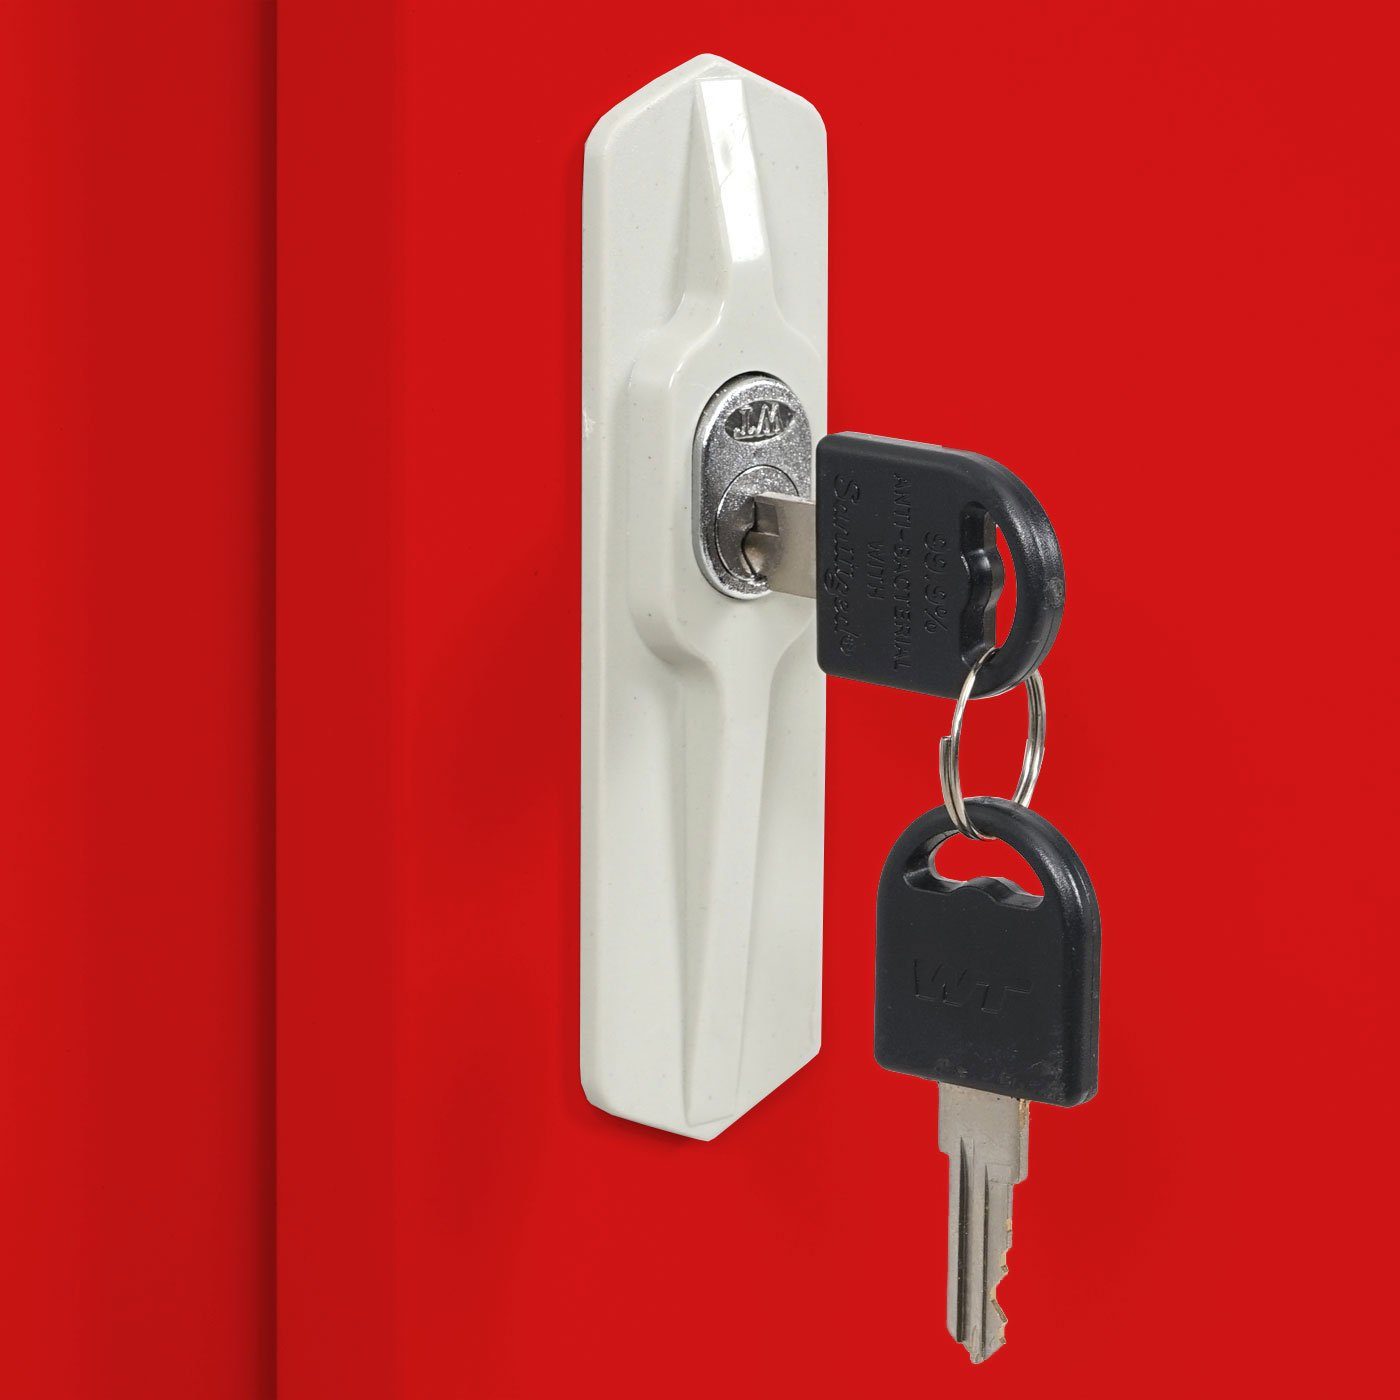 MCW Aktenschrank MCW-F41 Metallschrank, 2 Schlüssel Schiebetüren, Regalboden 2 inklusive, 1 rot